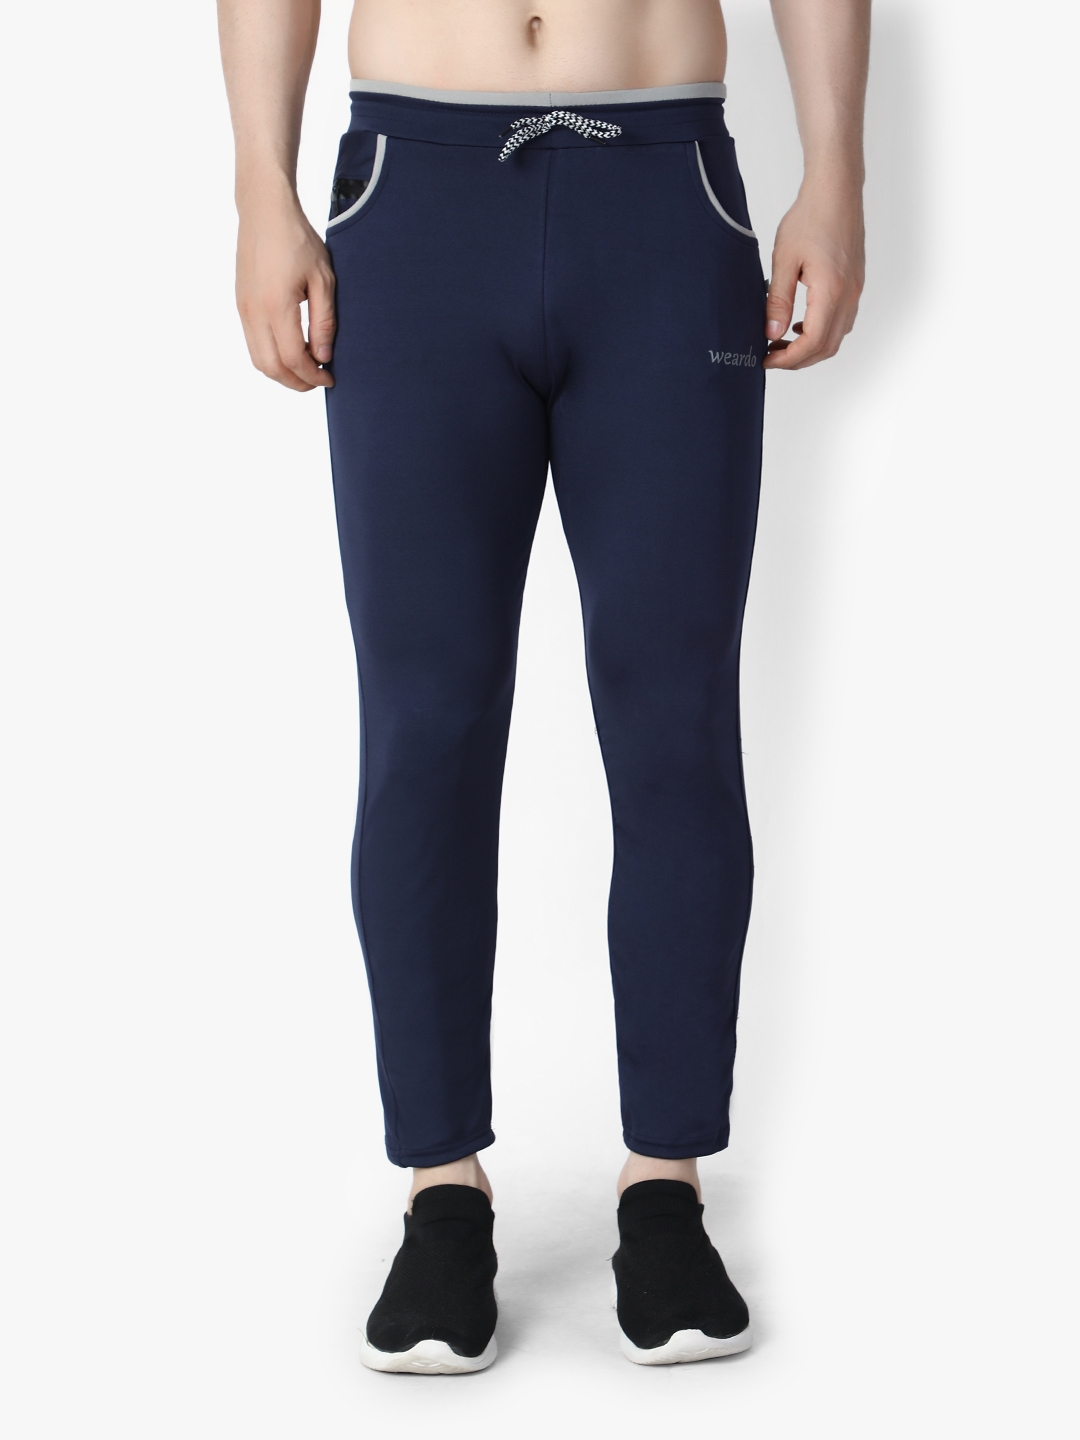 Weardo | Weardo Men's Solid Blue Jogger in 4 Way Stretchable Fabric